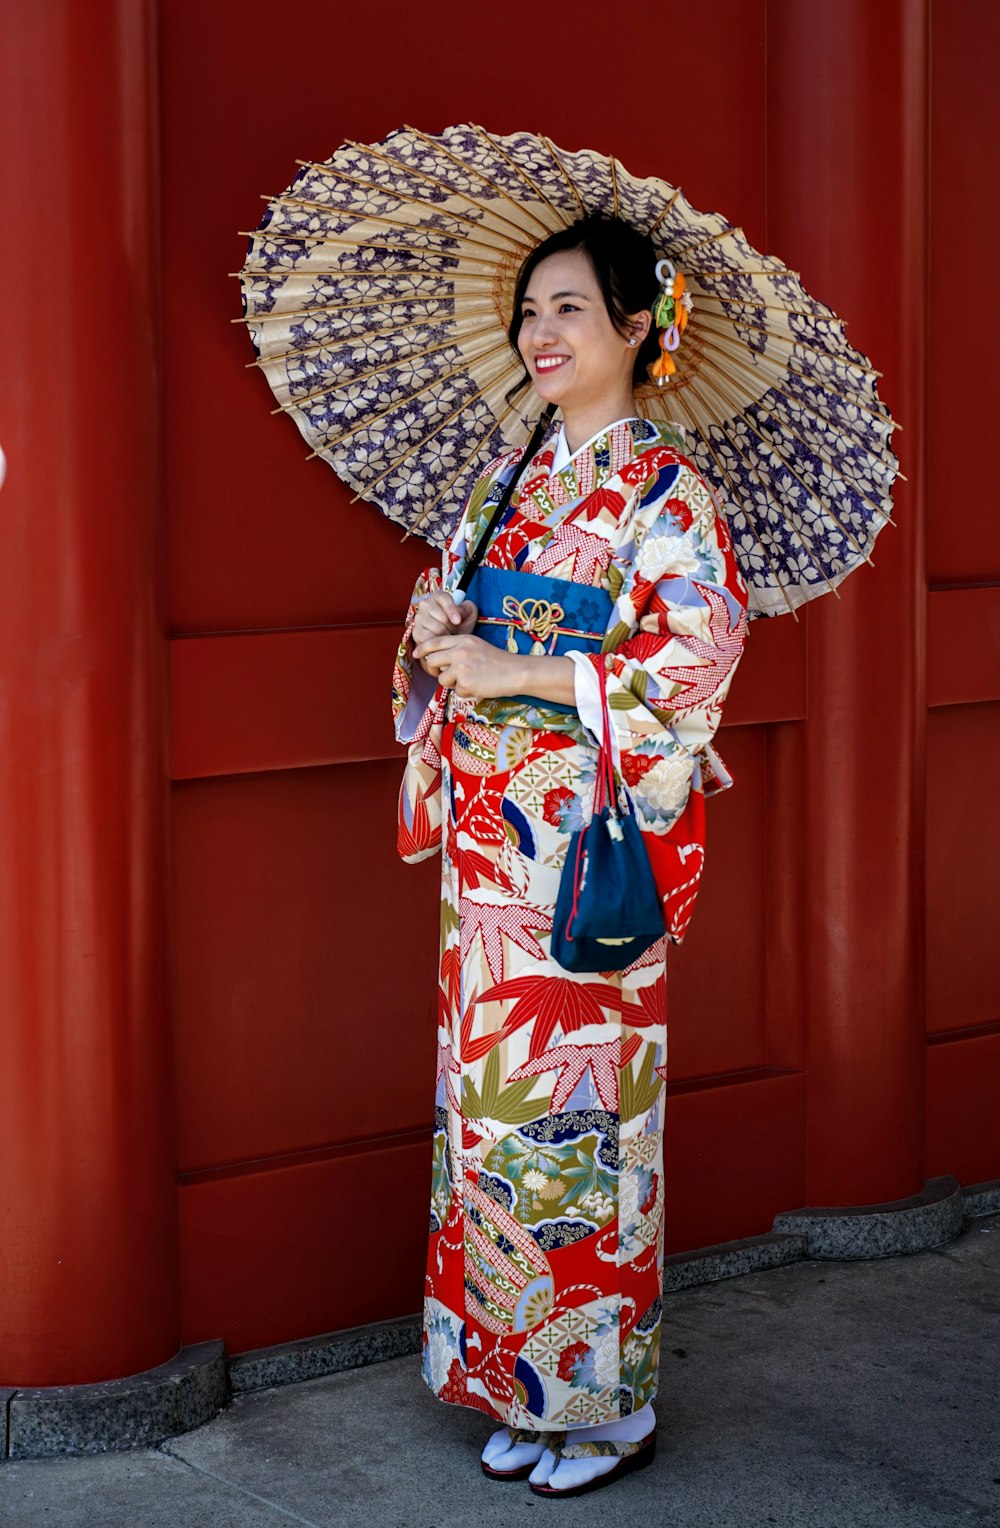 Femme en kimono rouge, blanc et bleu debout près du mur rouge